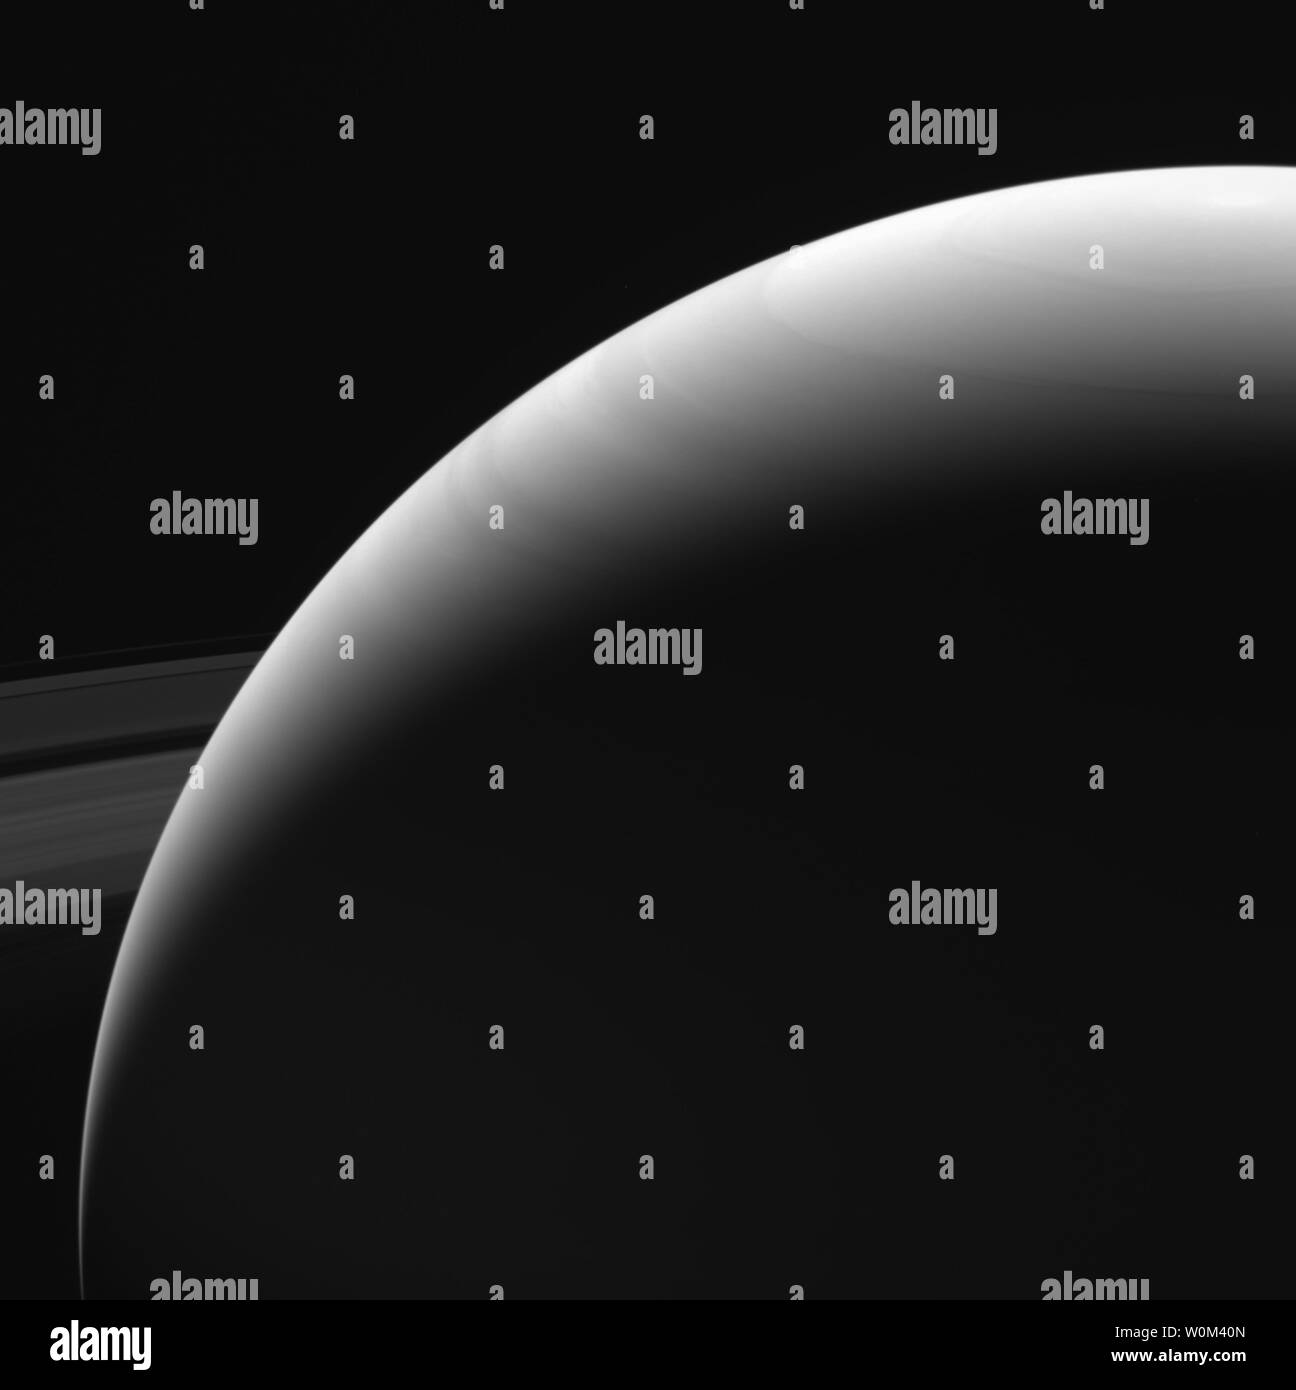 Questa immagine di Saturno emisfero settentrionale è stata presa dalla NASA sonda Cassini il 13 settembre 2017. Essa è tra le ultime immagini Cassini inviato nuovamente a terra. La vista era preso in luce rossa visibile utilizzando la sonda Cassini ampio angolo di telecamera a distanza di 684,000 miglia (1.1 milioni di chilometri) da Saturno. Il 15 settembre 2017, dopo due decenni nello spazio, NASA sonda Cassini ha fatto il suo approccio finale di Saturno, immersioni in l'atmosfera del pianeta. Sin dal suo arrivo nel 2004, la missione Cassini-Huygens è stata una scoperta macchina, rivoluzionando la nostra conoscenza del Saturno syste Foto Stock